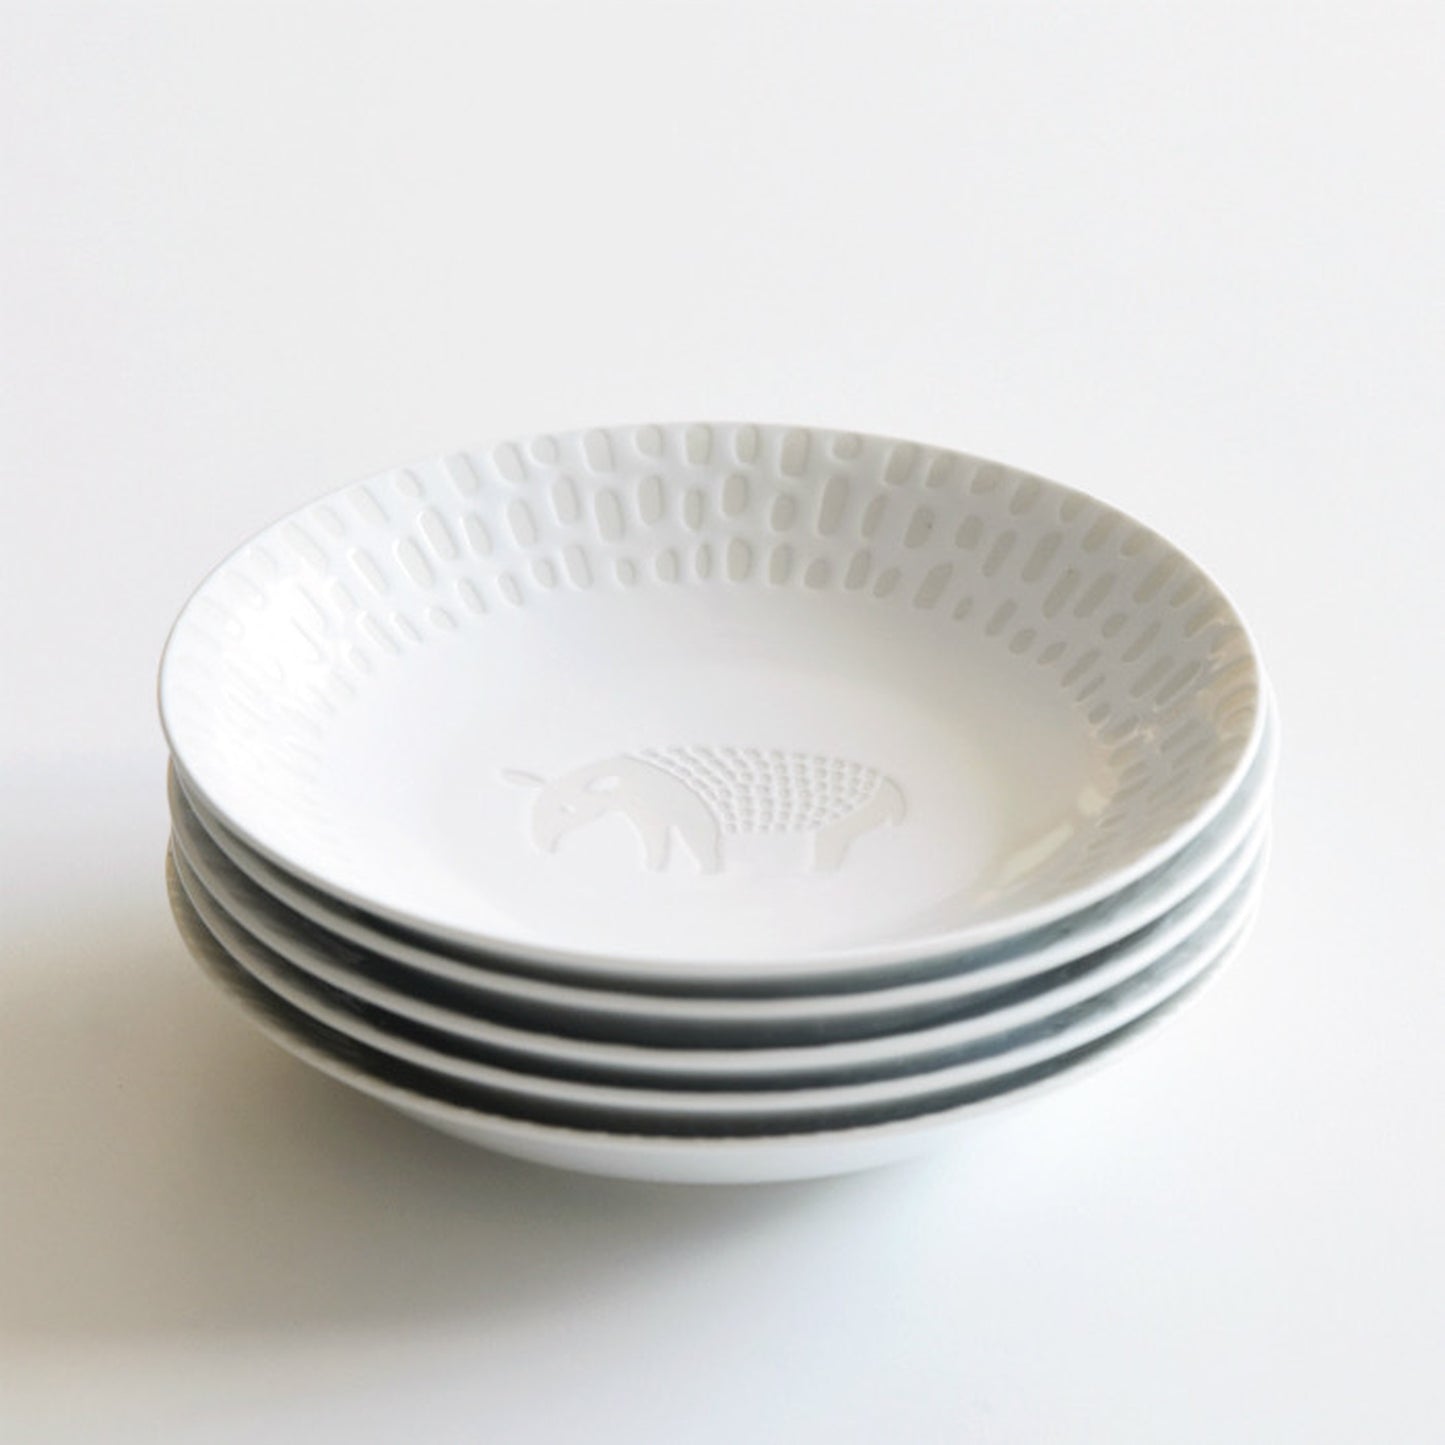 [Hasami ware] [natural69] [ZUPA white] [Dish] 时尚餐具斯堪的纳维亚风格上菜盘蛋糕盘圆盘